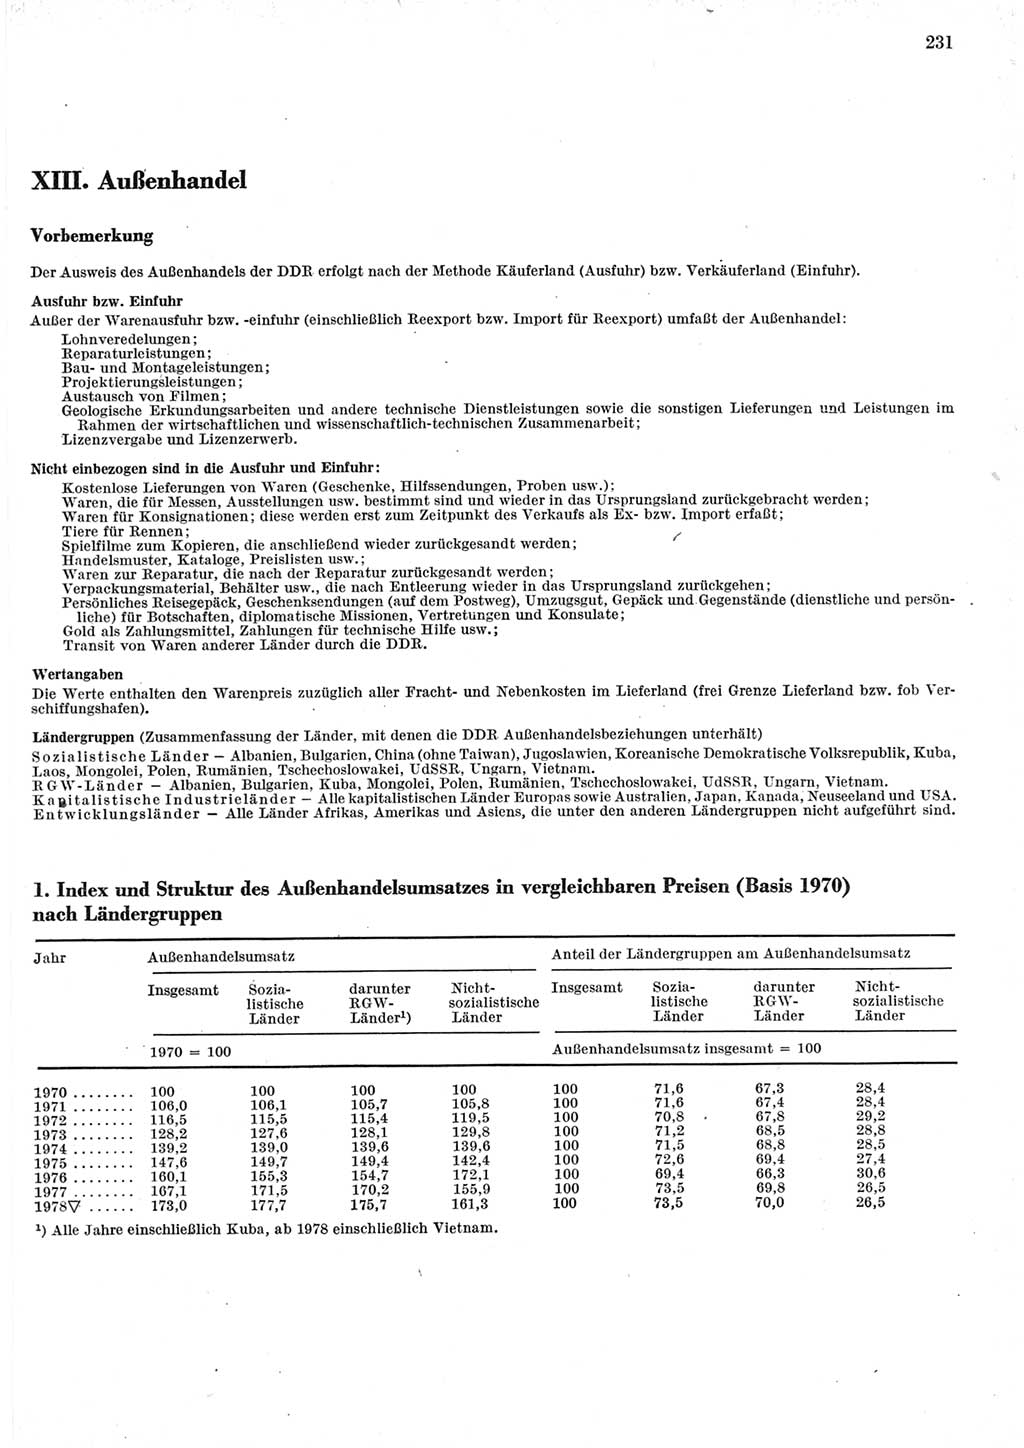 Statistisches Jahrbuch der Deutschen Demokratischen Republik (DDR) 1979, Seite 231 (Stat. Jb. DDR 1979, S. 231)